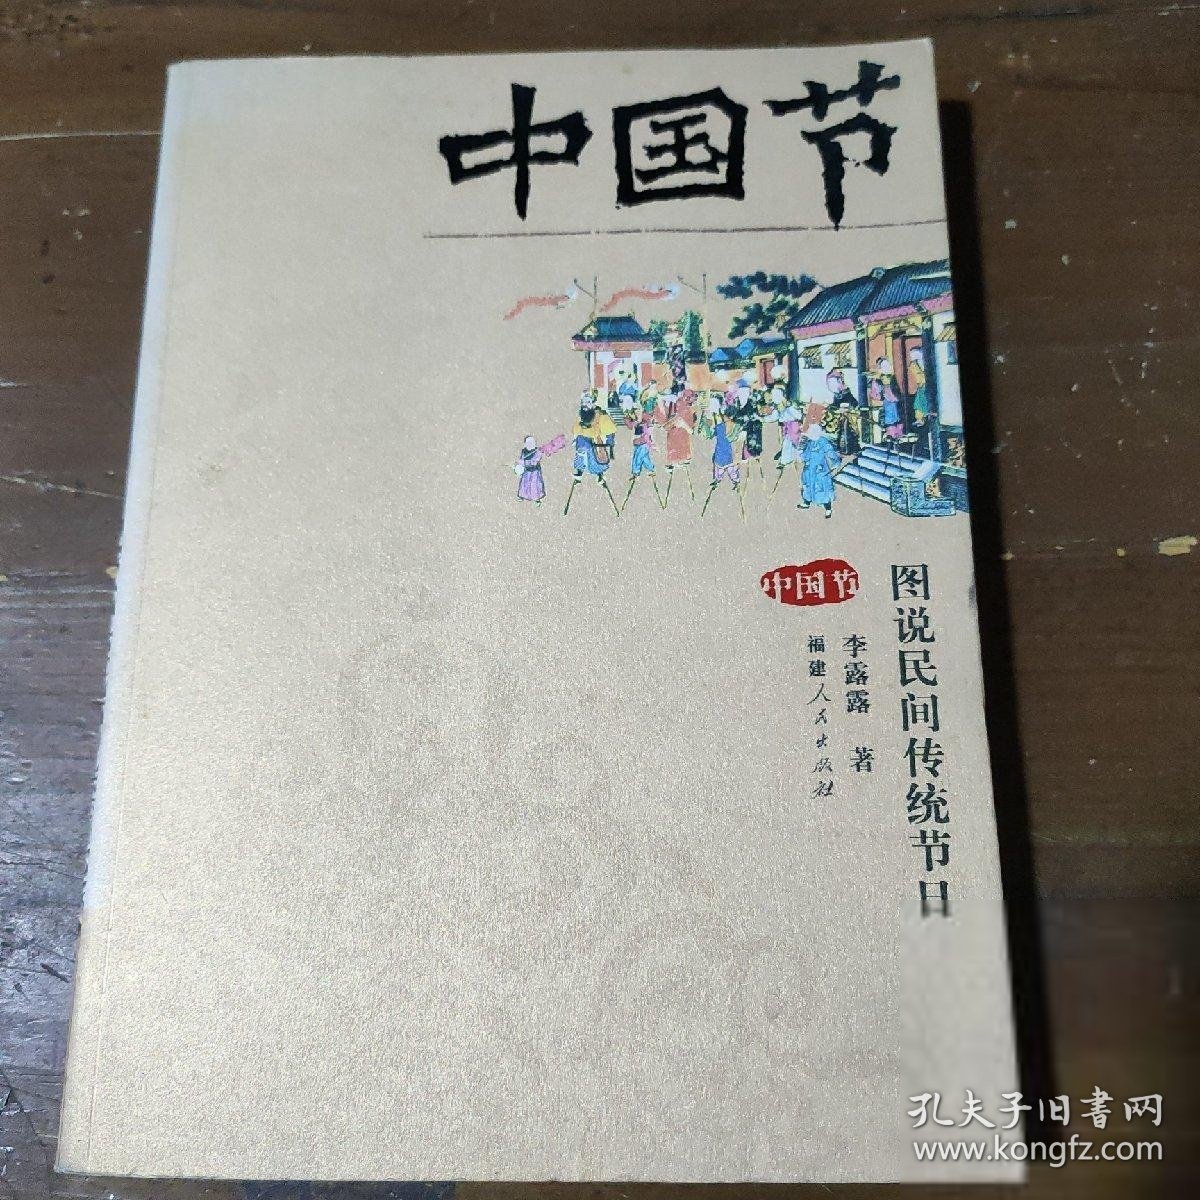 中国节(图说民间传统节日)李露露  著福建人民出版社